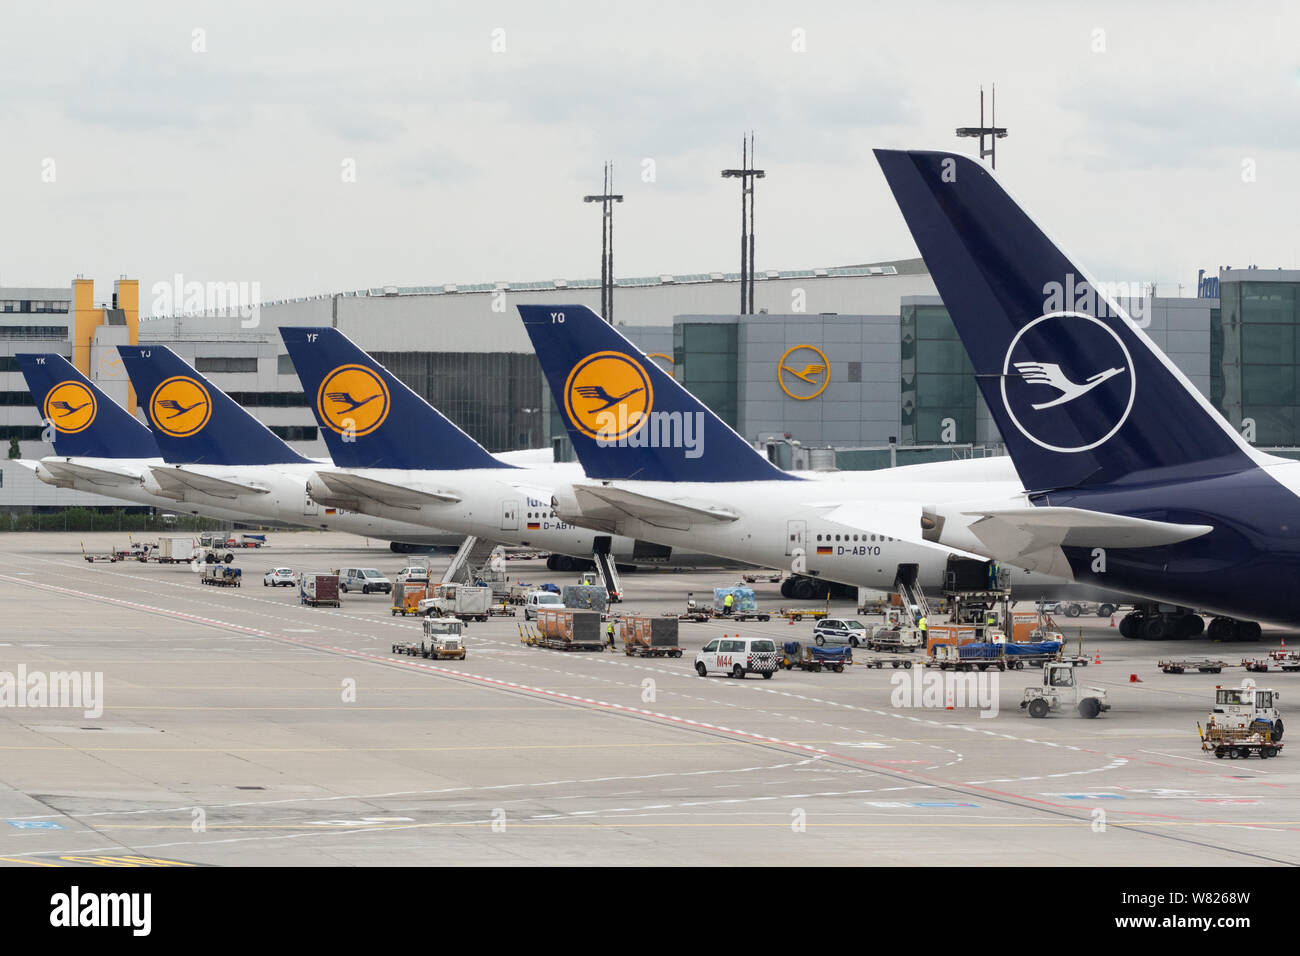 Les avions de la Lufthansa à l'aéroport de Frankfurt, Frankfurt am Main, Germany, Europe Banque D'Images